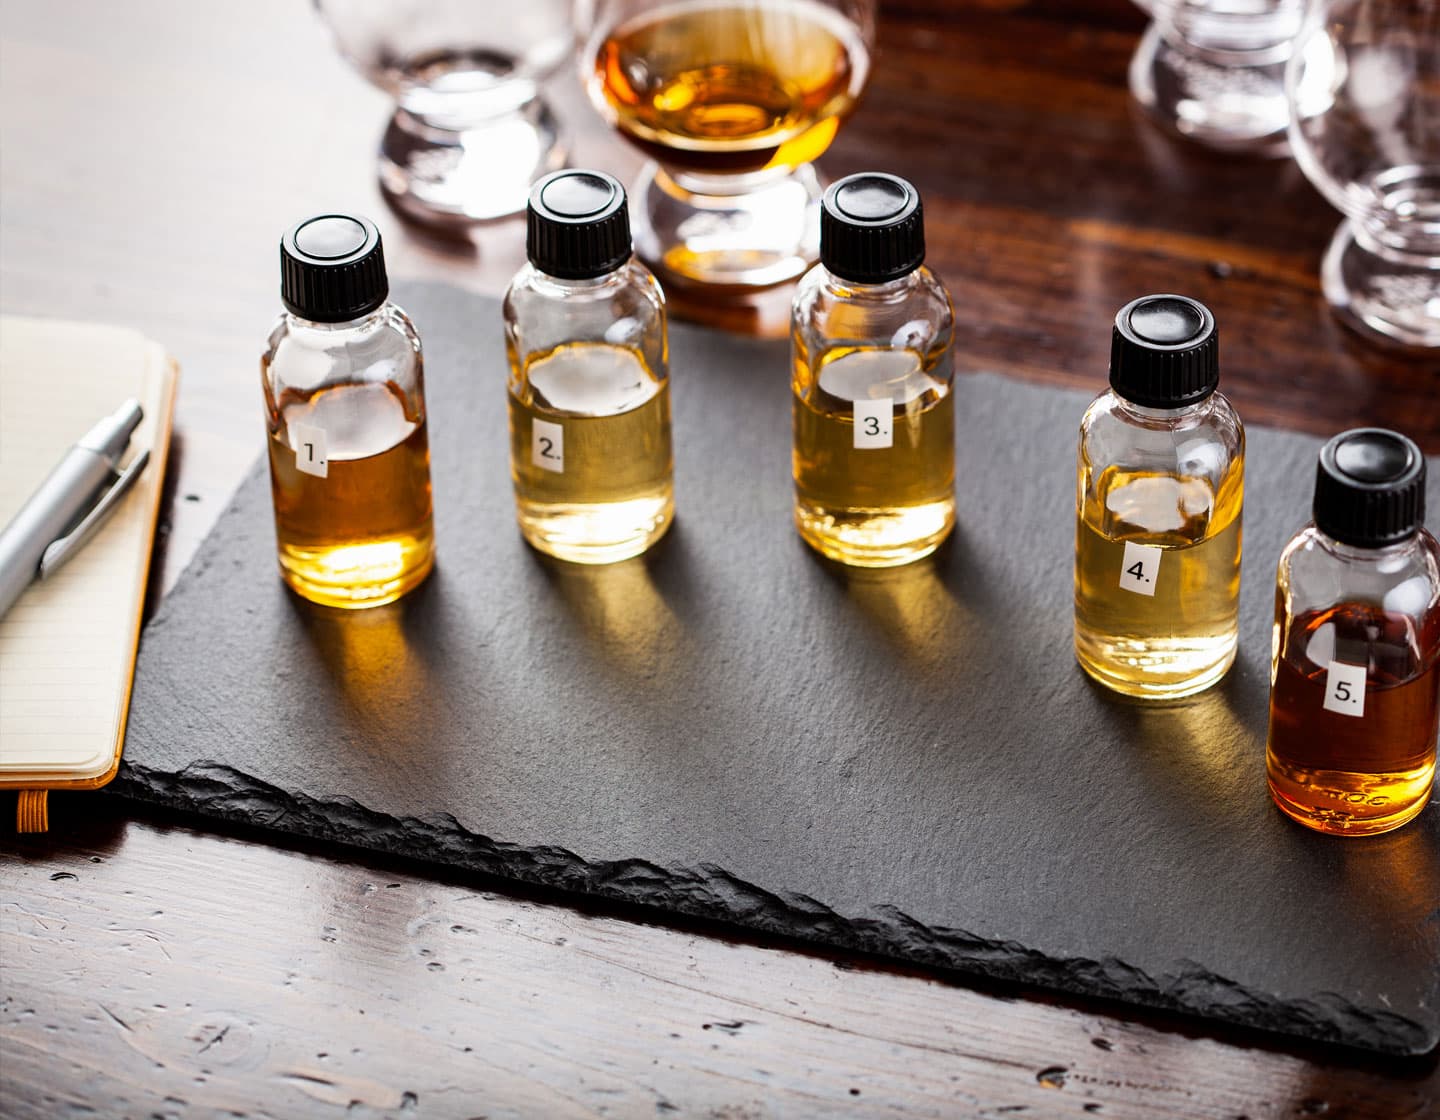  Botellas de muestras de whisky numeradas en una mesa